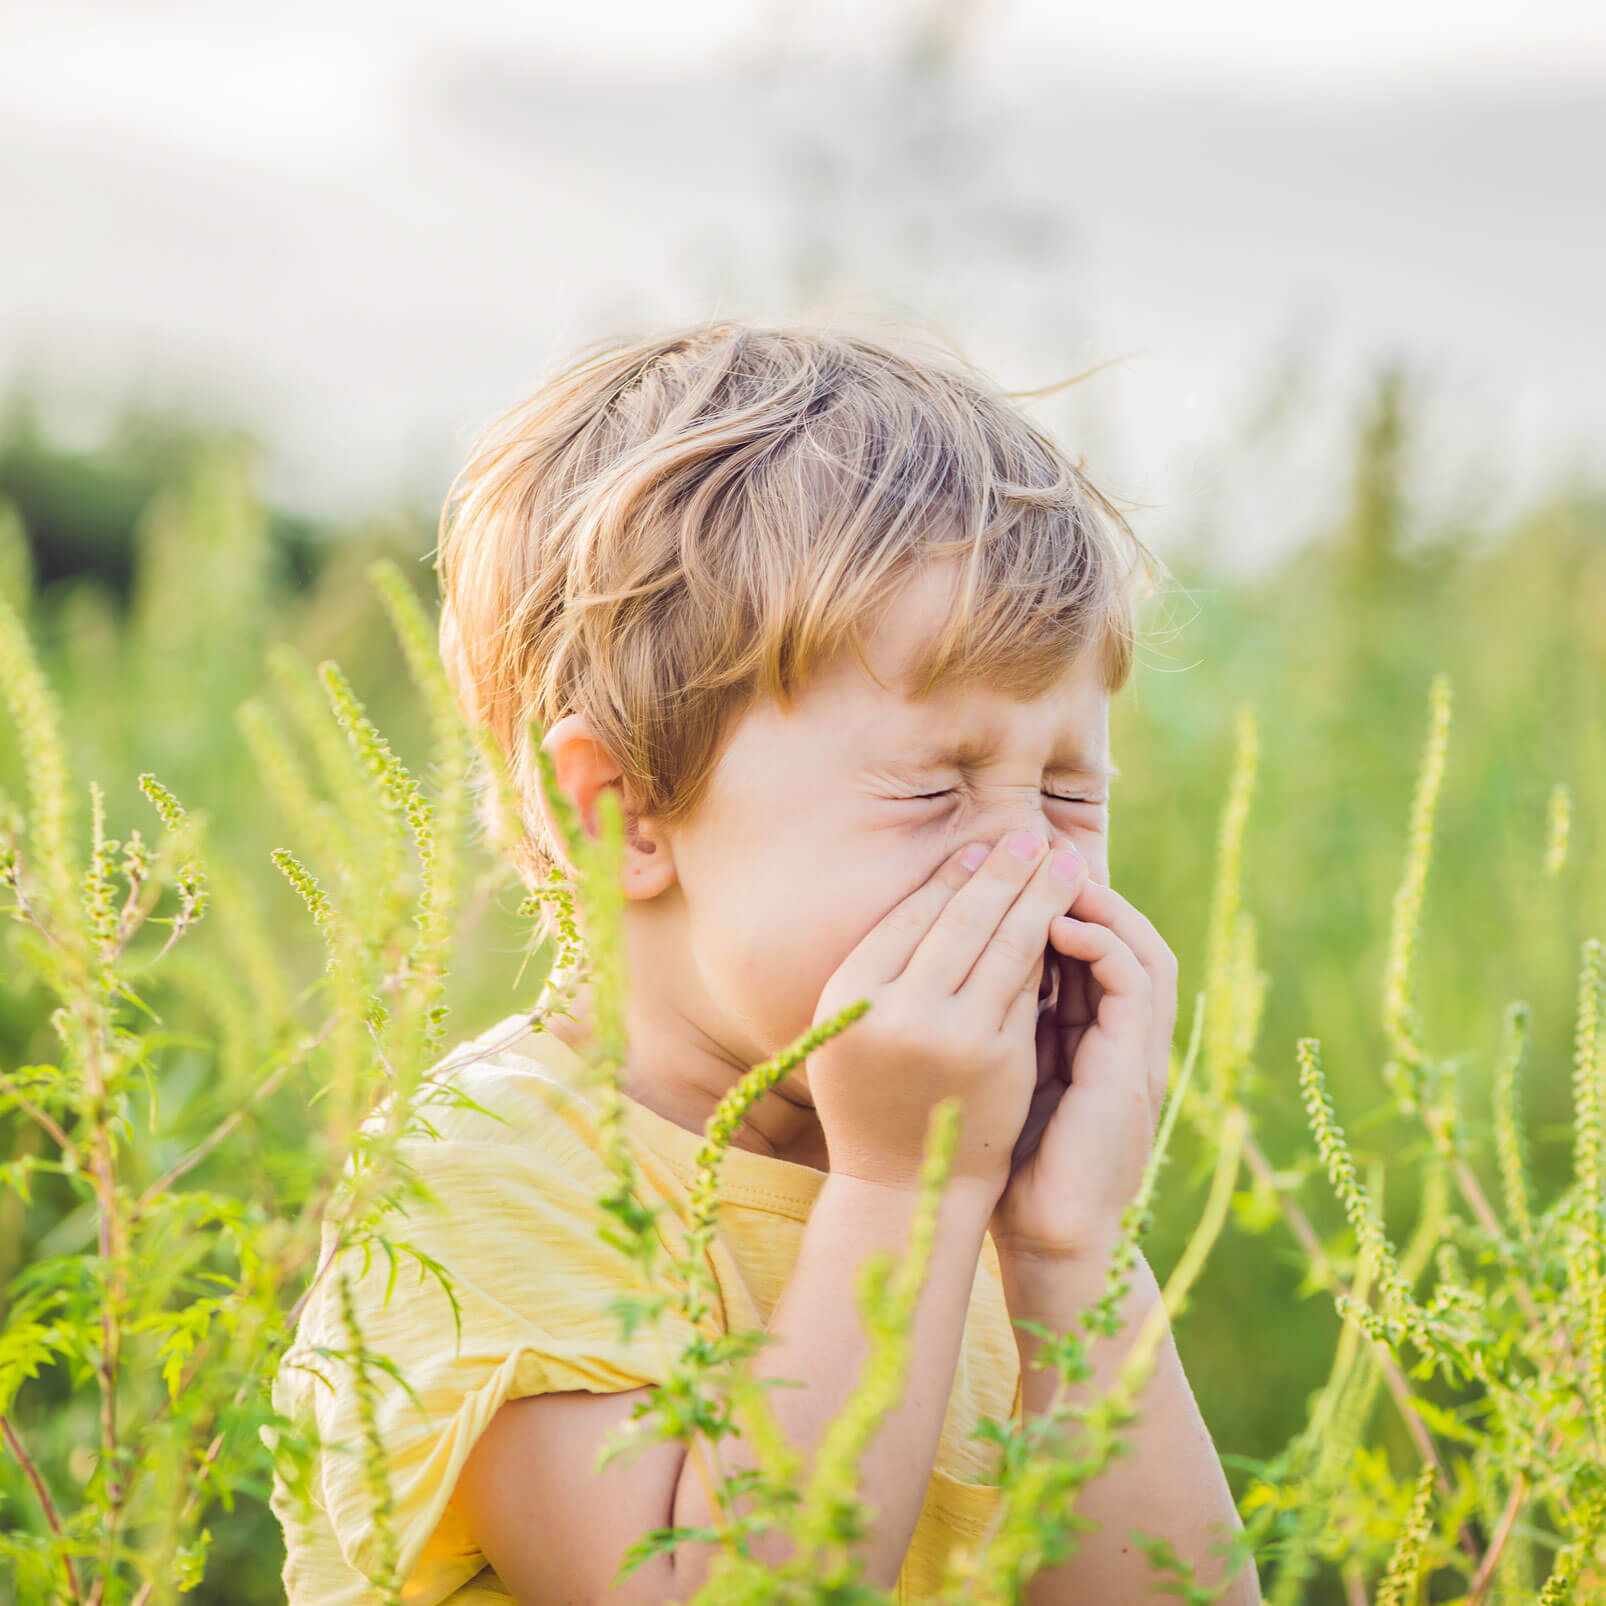 Ein kleiner blonder Junge sitzt in hohem Gras und hält sich die Hände an den Mund und die Nase, weil er niesen muss.